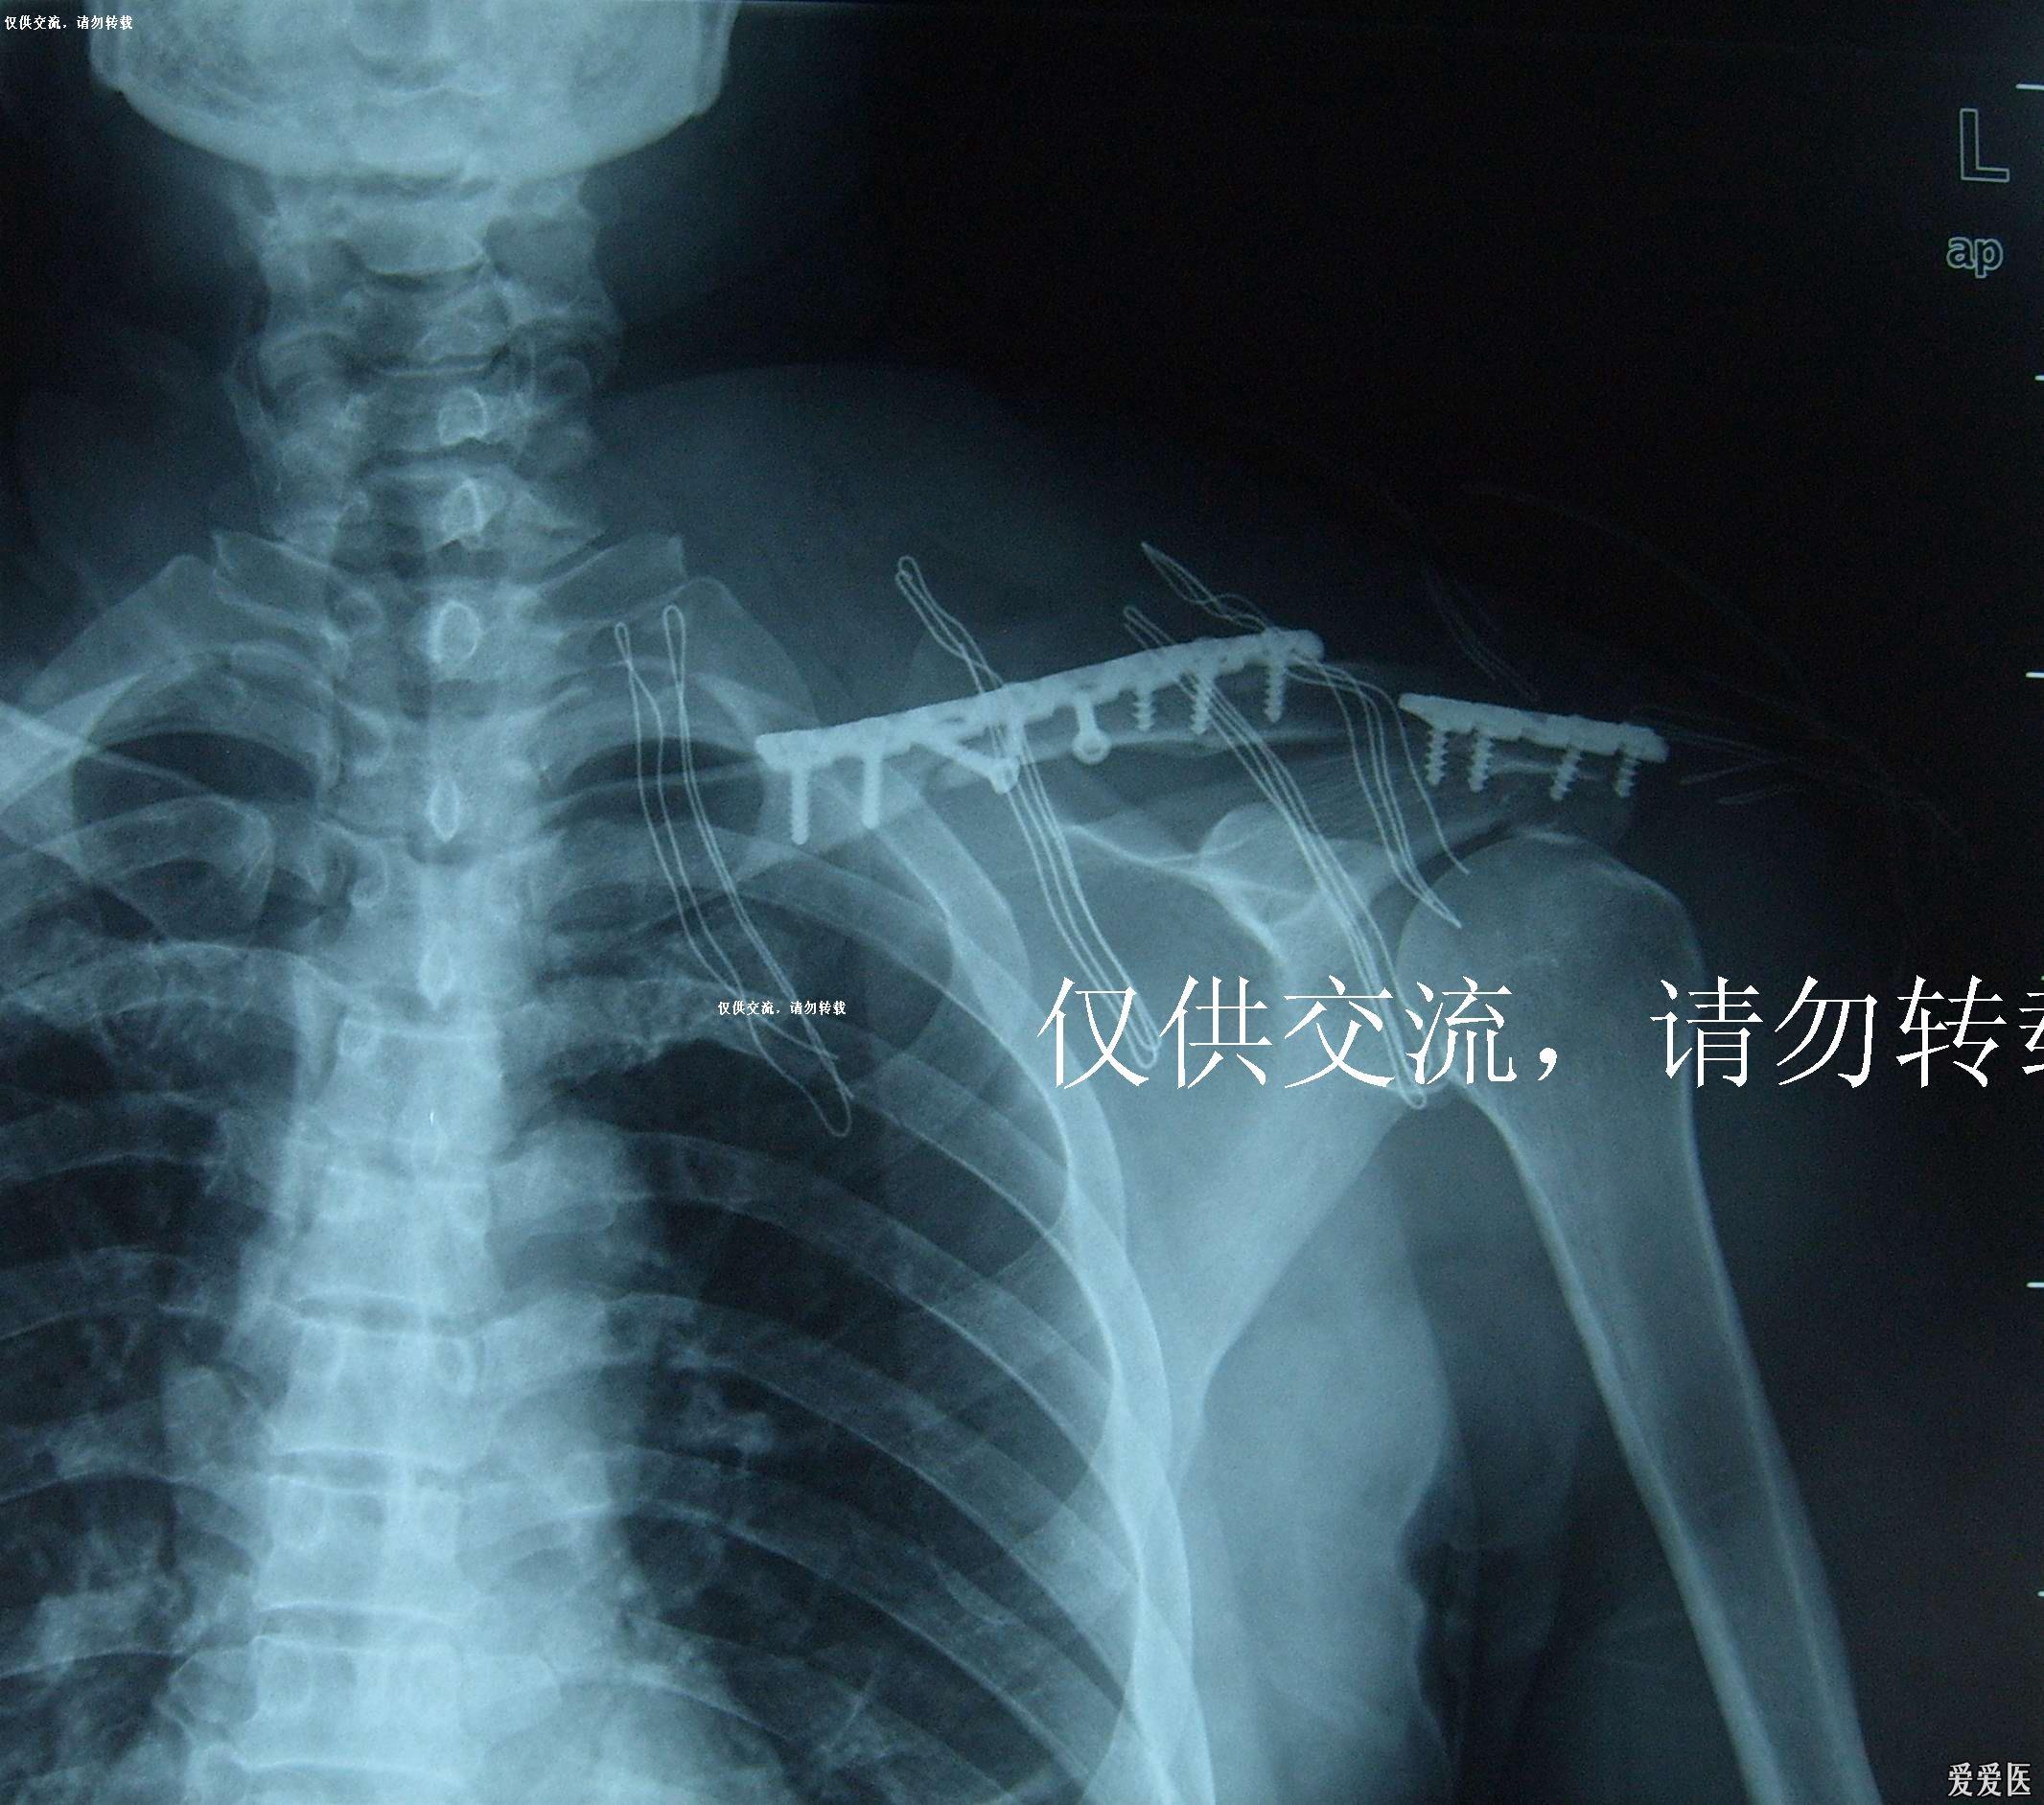 一例锁骨骨折合并肩峰骨折的治疗